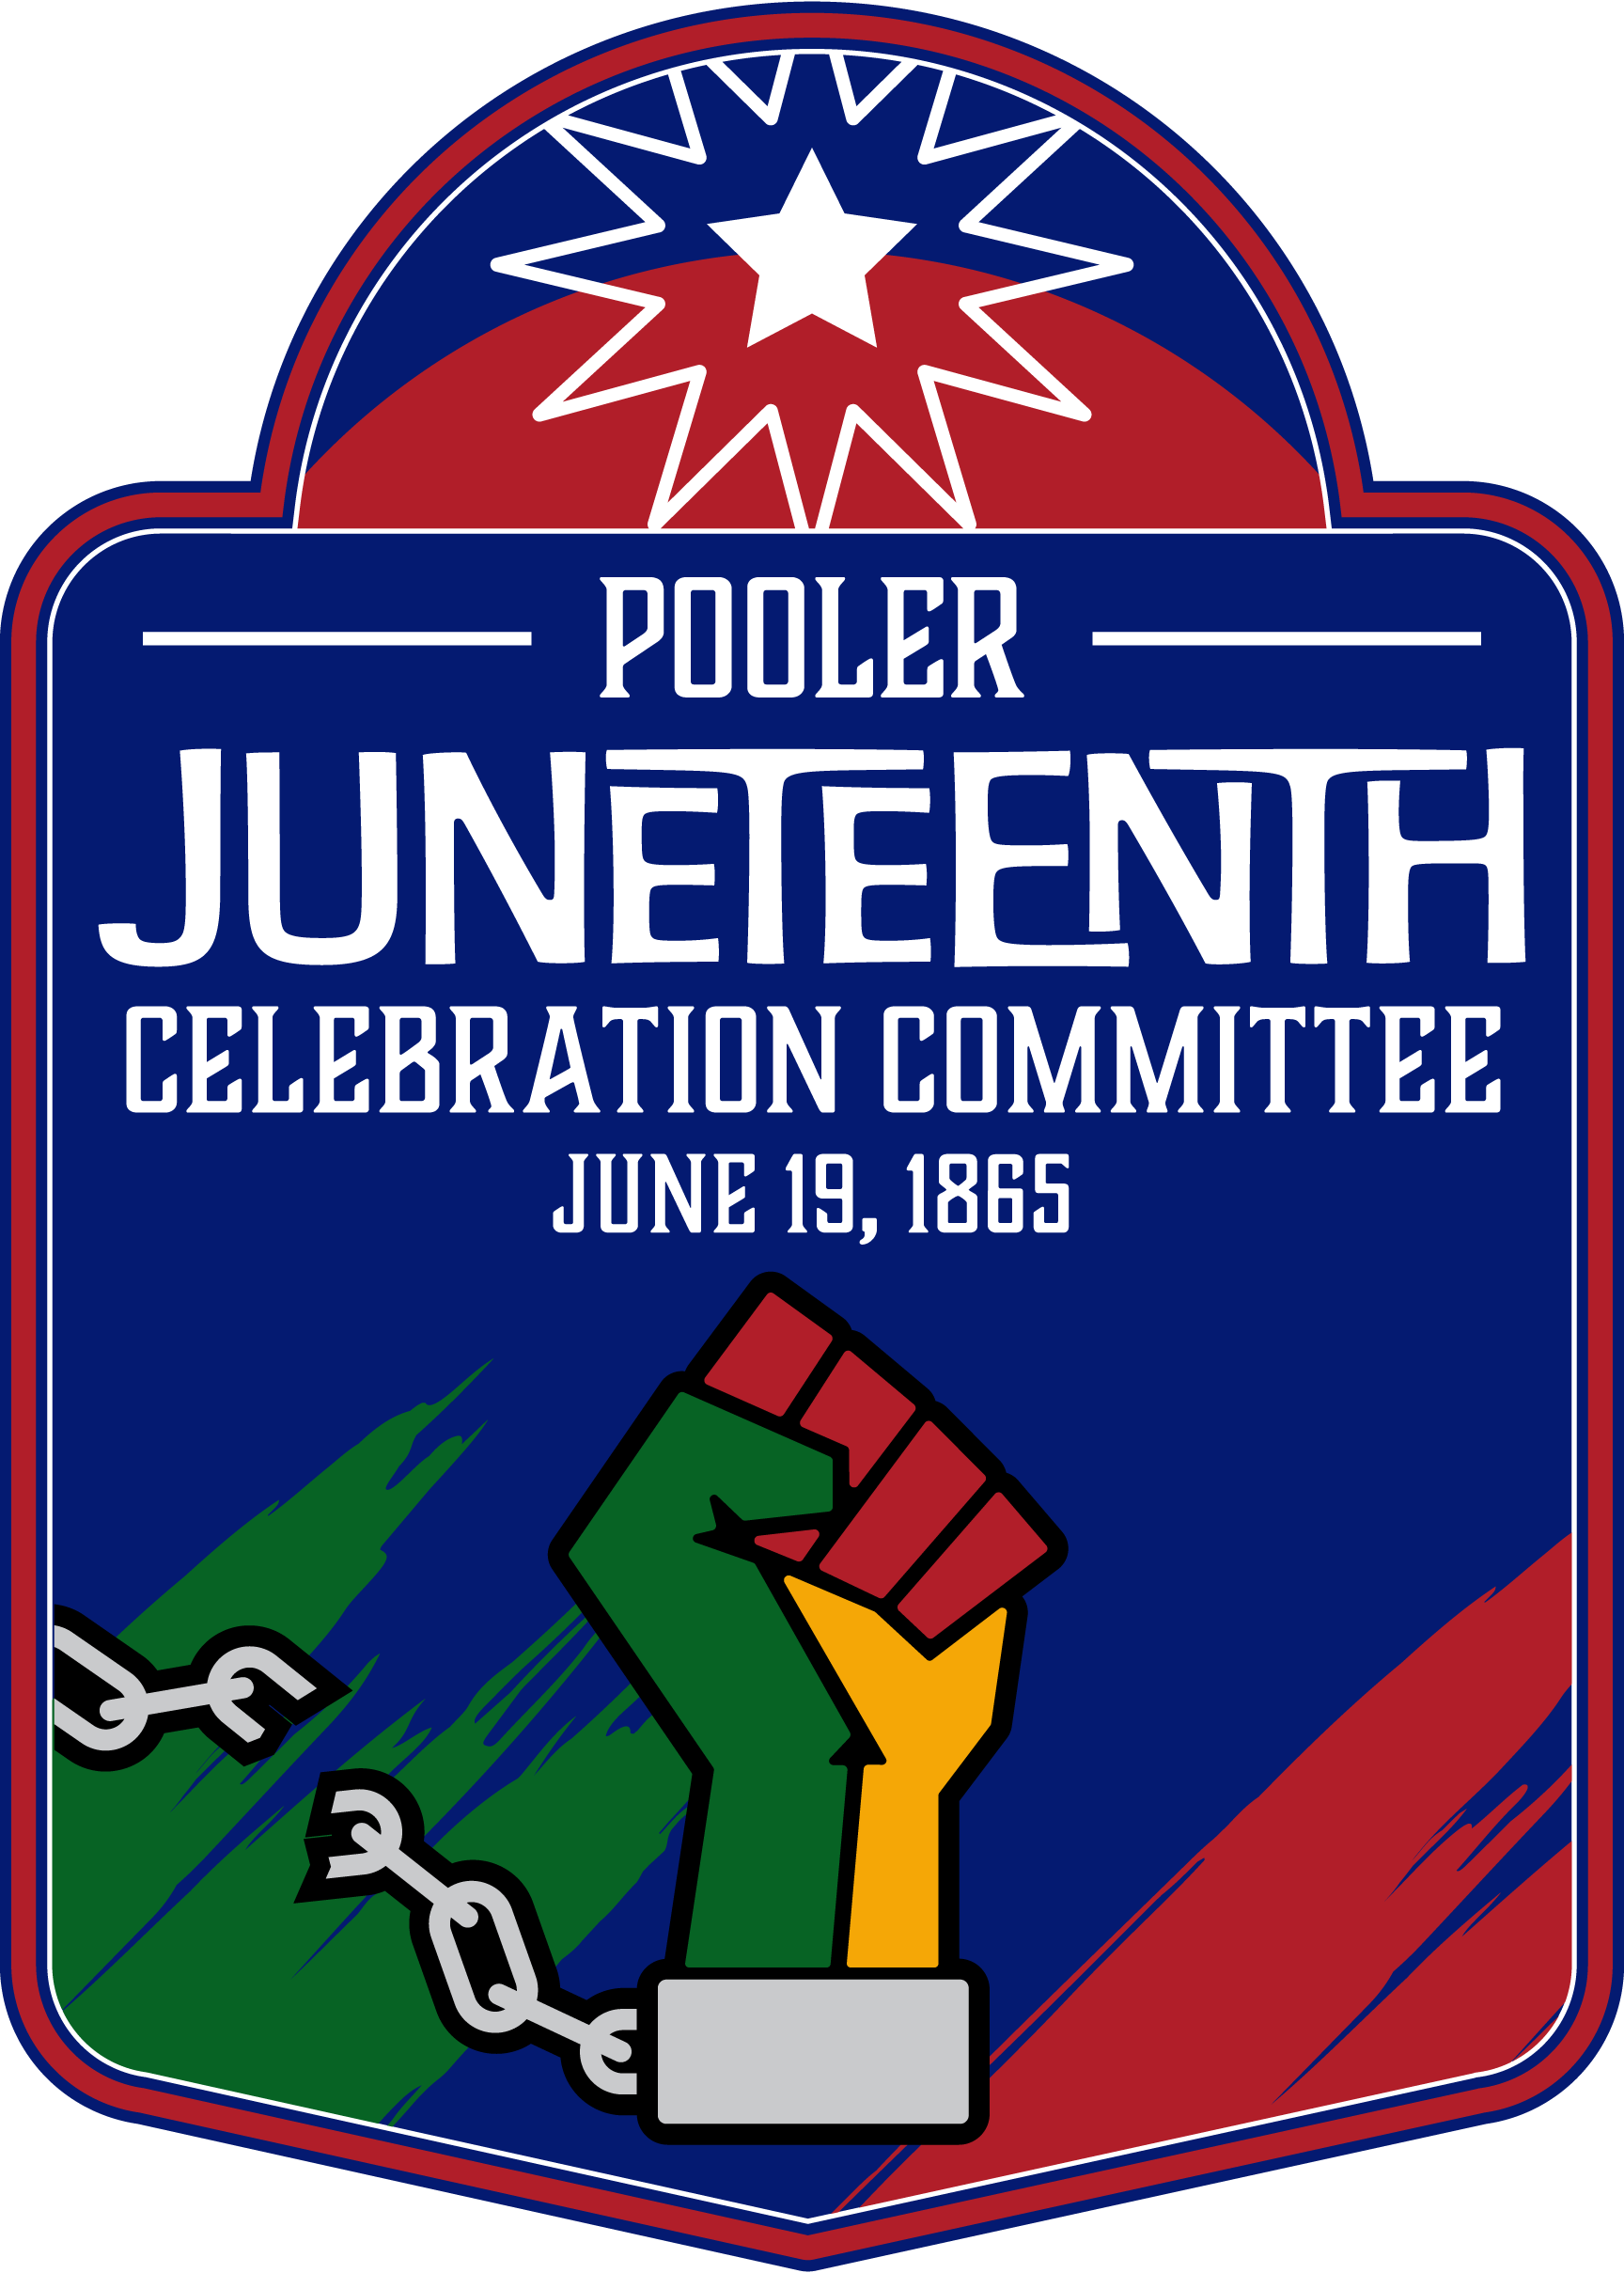 Pooler Juneteenth Celebration